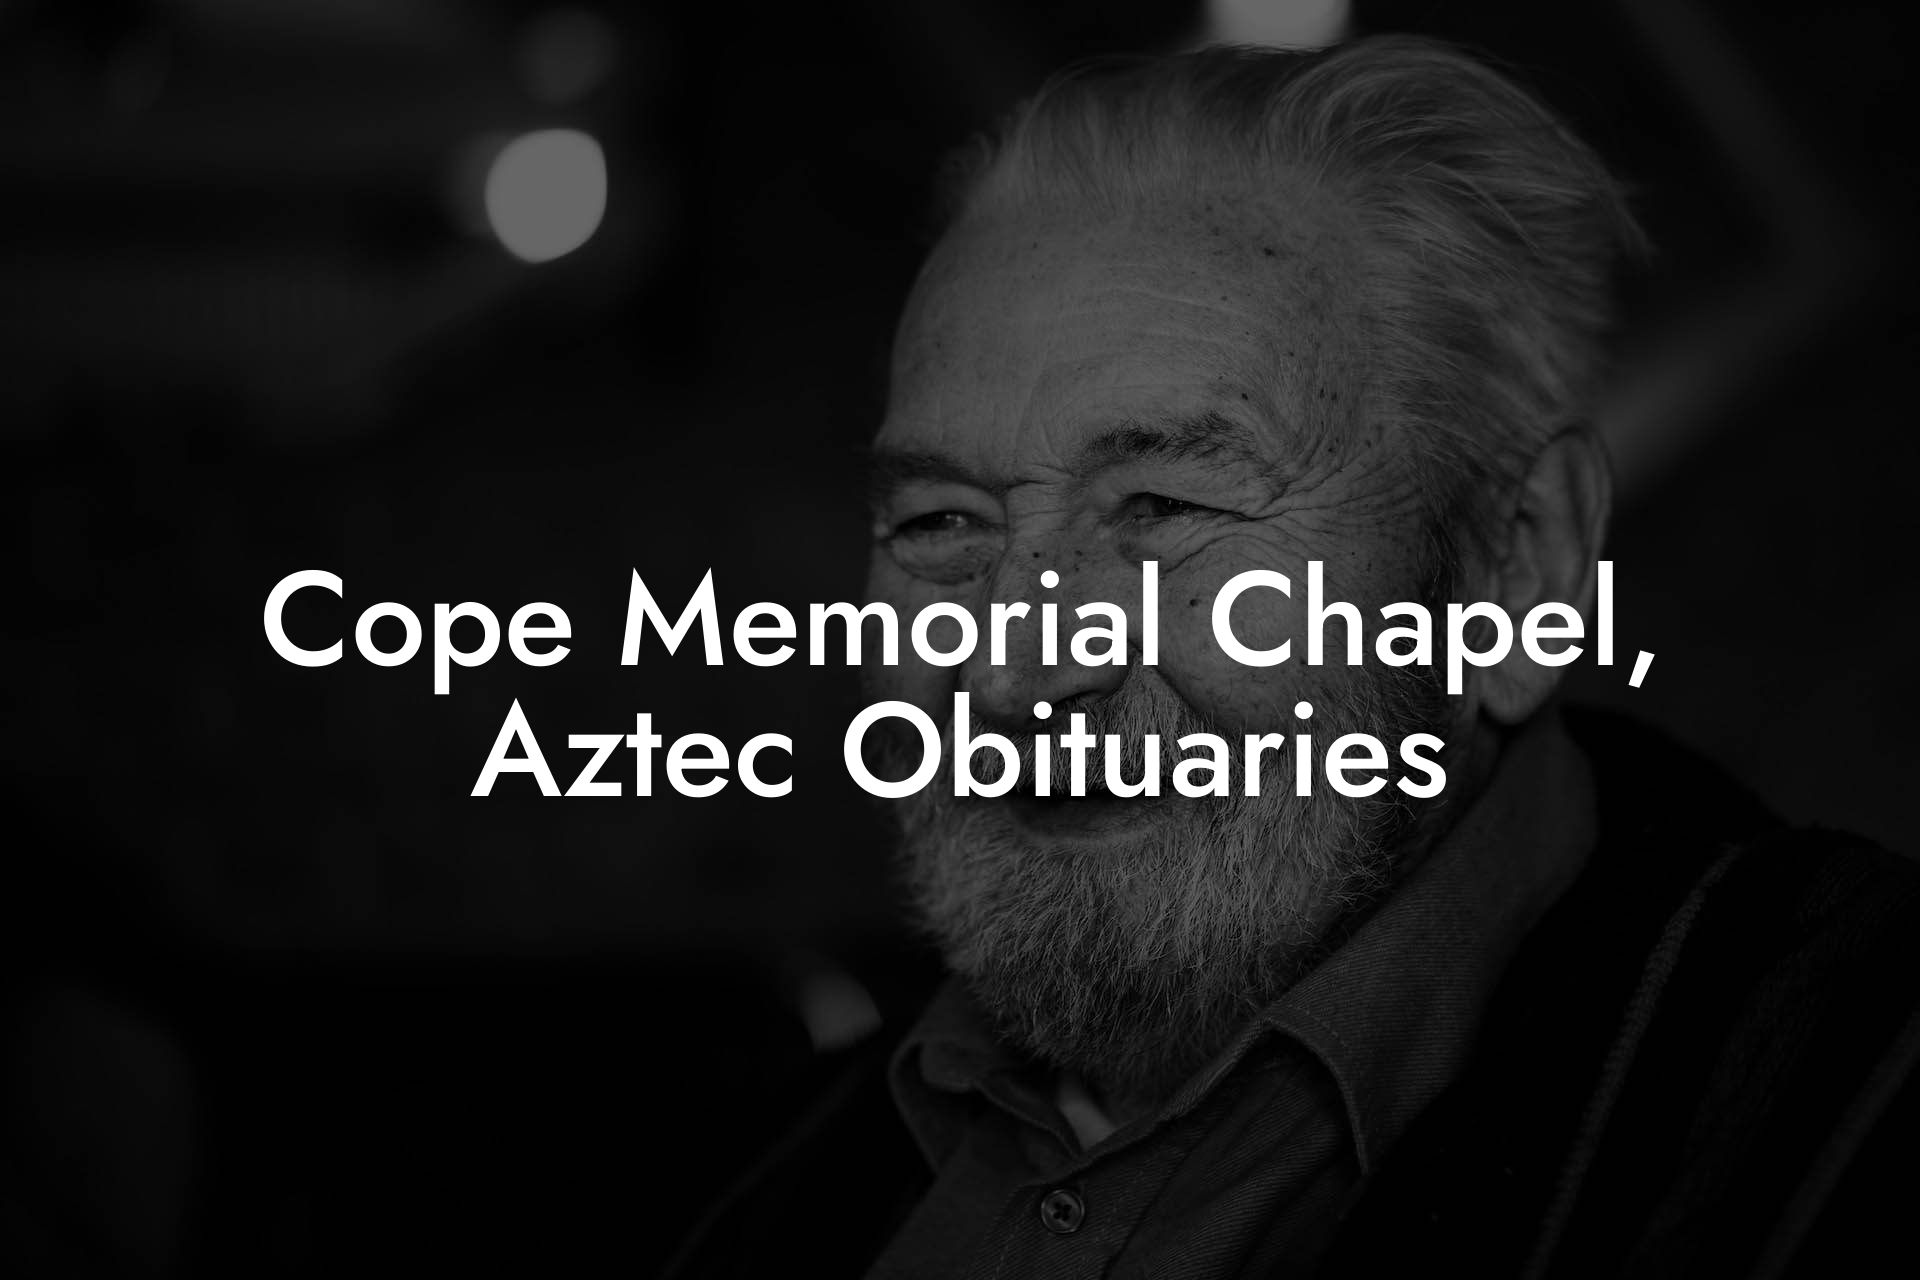 Cope Memorial Chapel, Aztec Obituaries